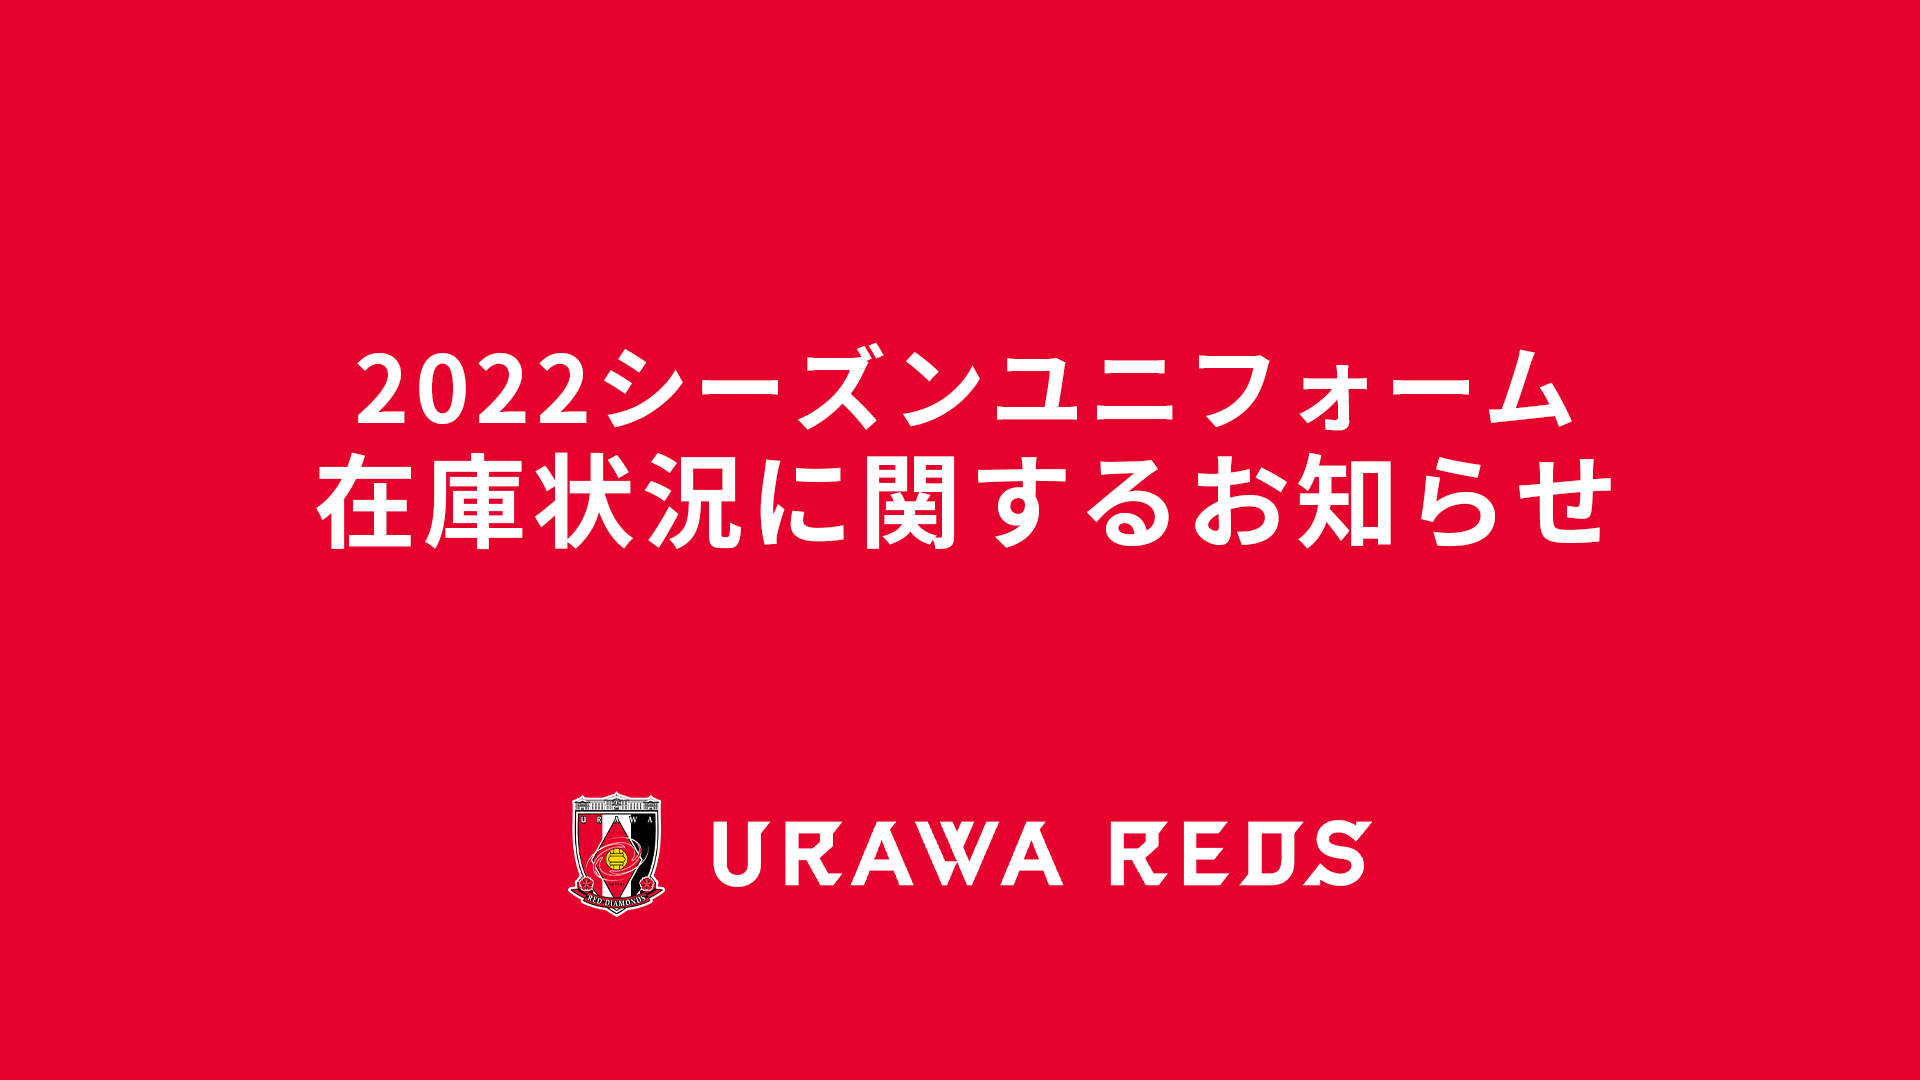 2022シーズンレプリカユニフォーム/1st(大人サイズ)完売のお知らせ